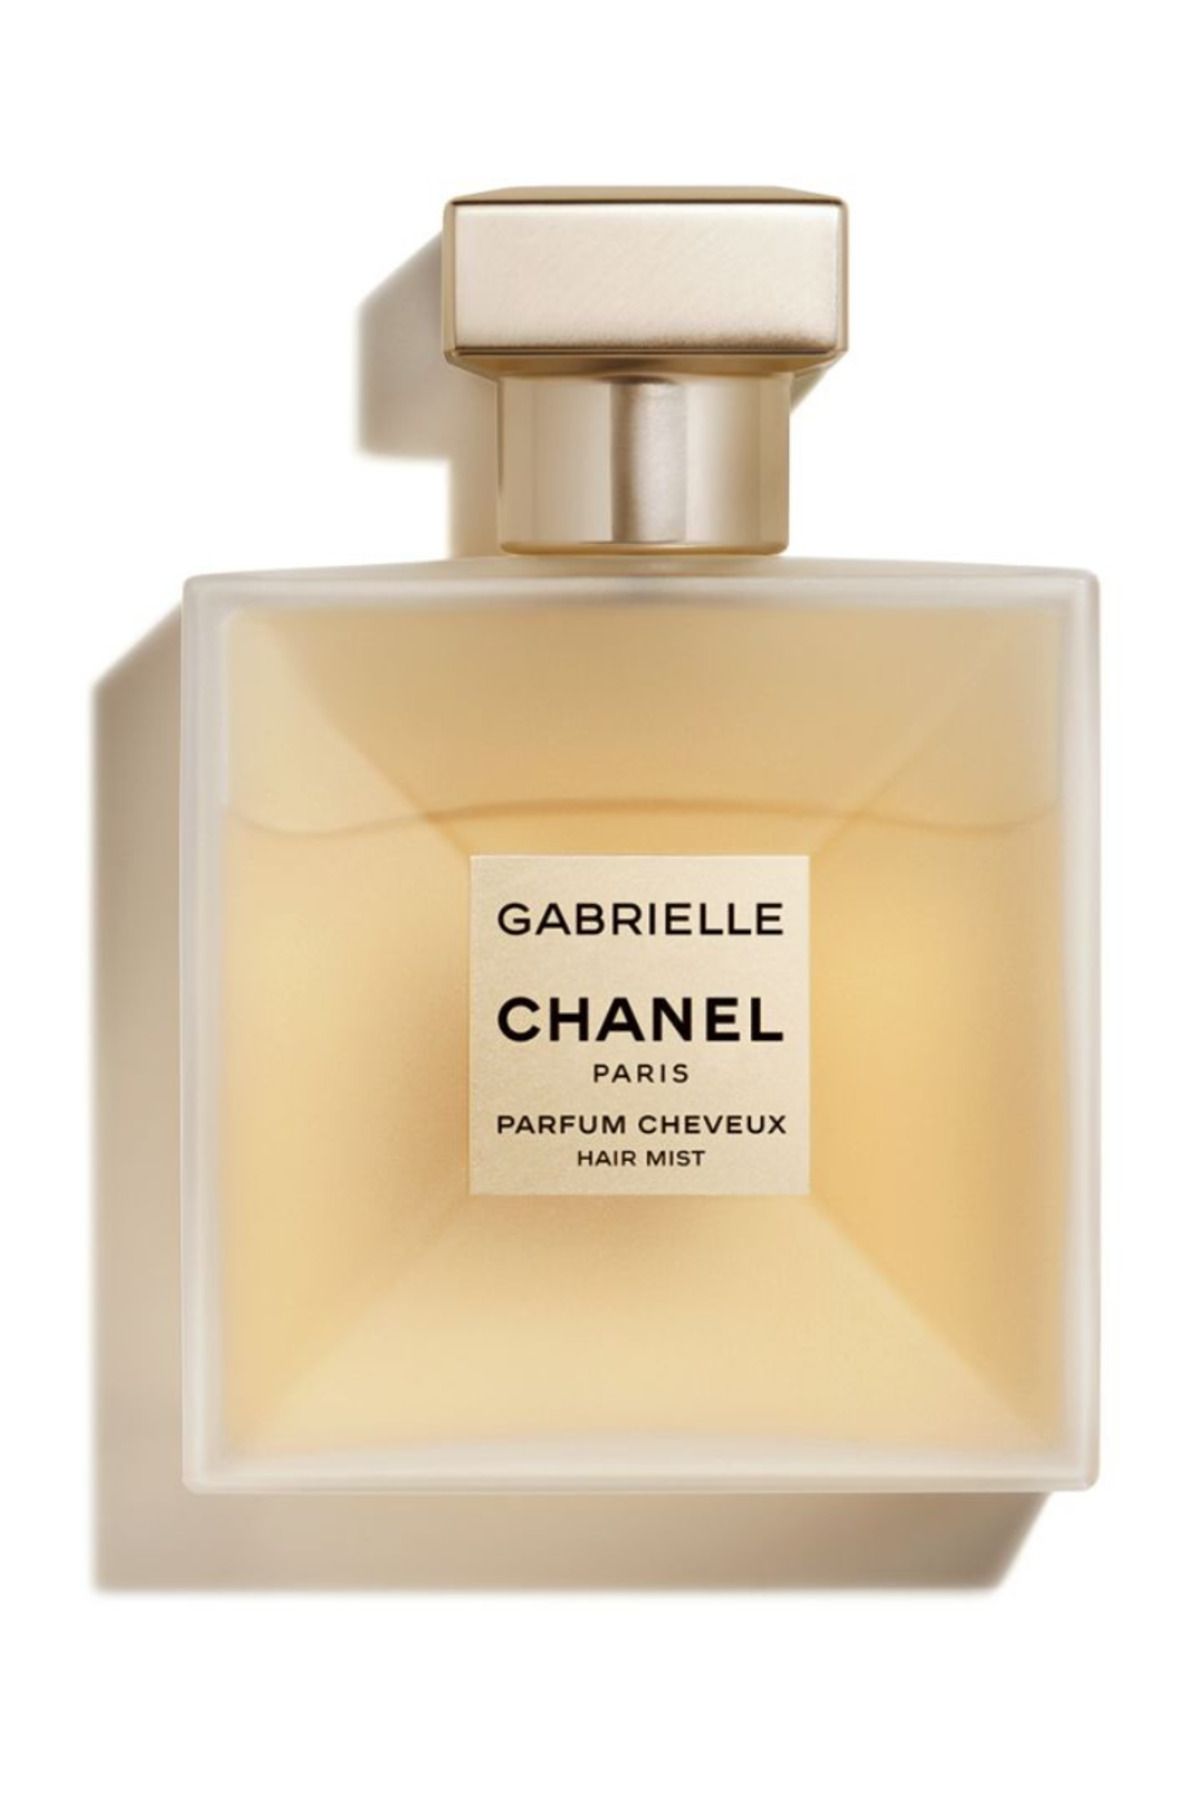 Chanel Gabrielle Chanel Hair Mist 40 Ml